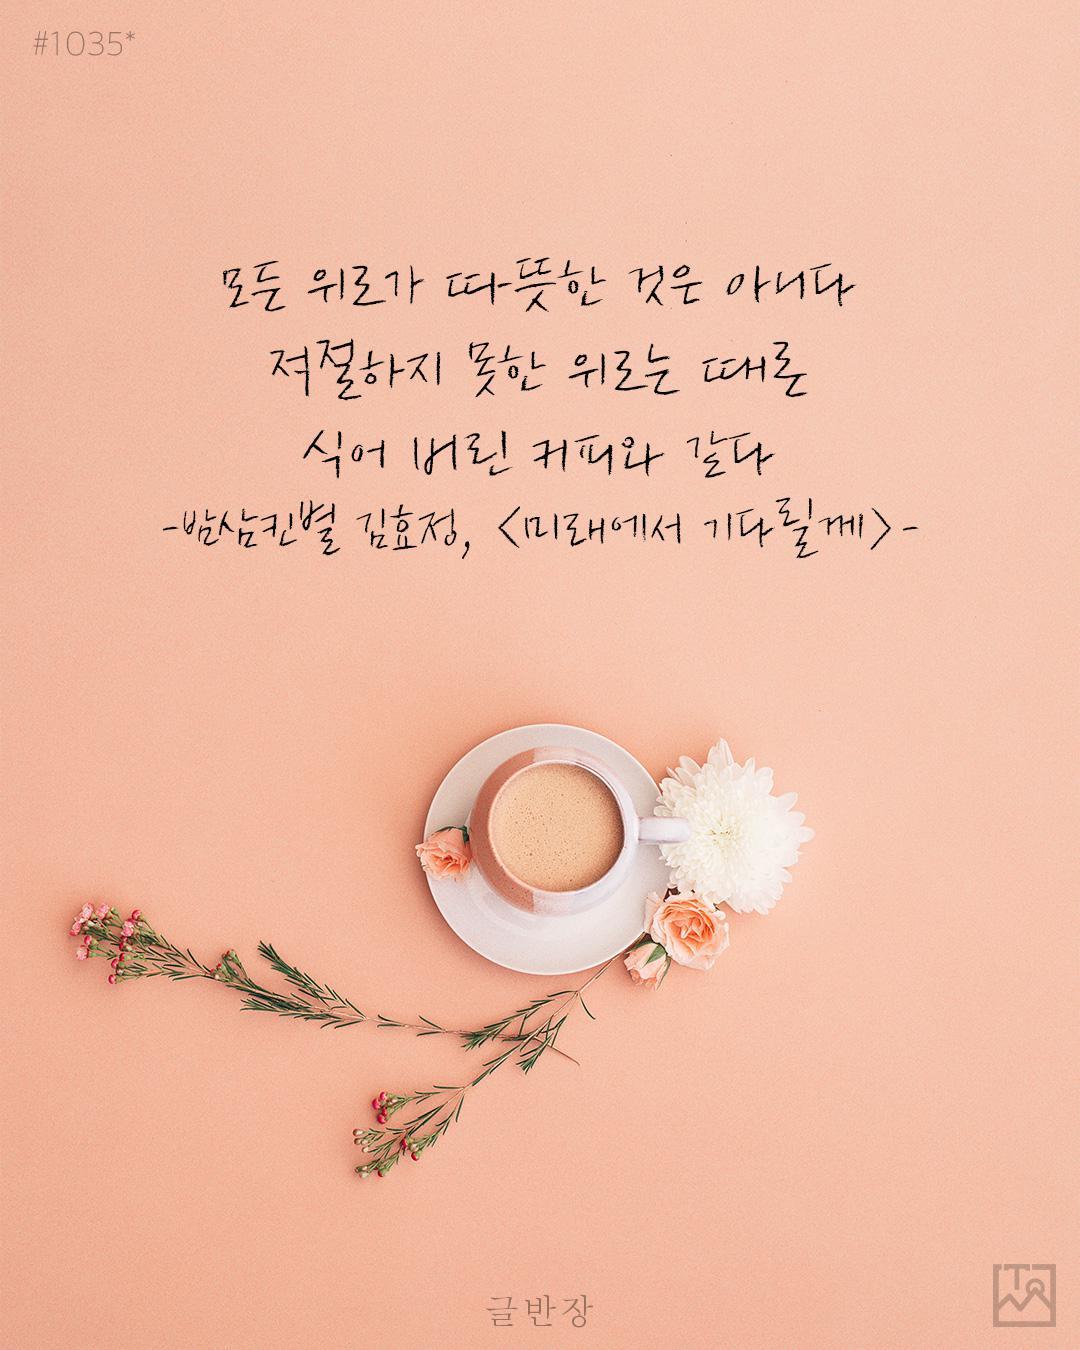 모든 위로가 따뜻한 것은 아니다 - 밤삼킨별 김효정, <미래에서 기다릴께>